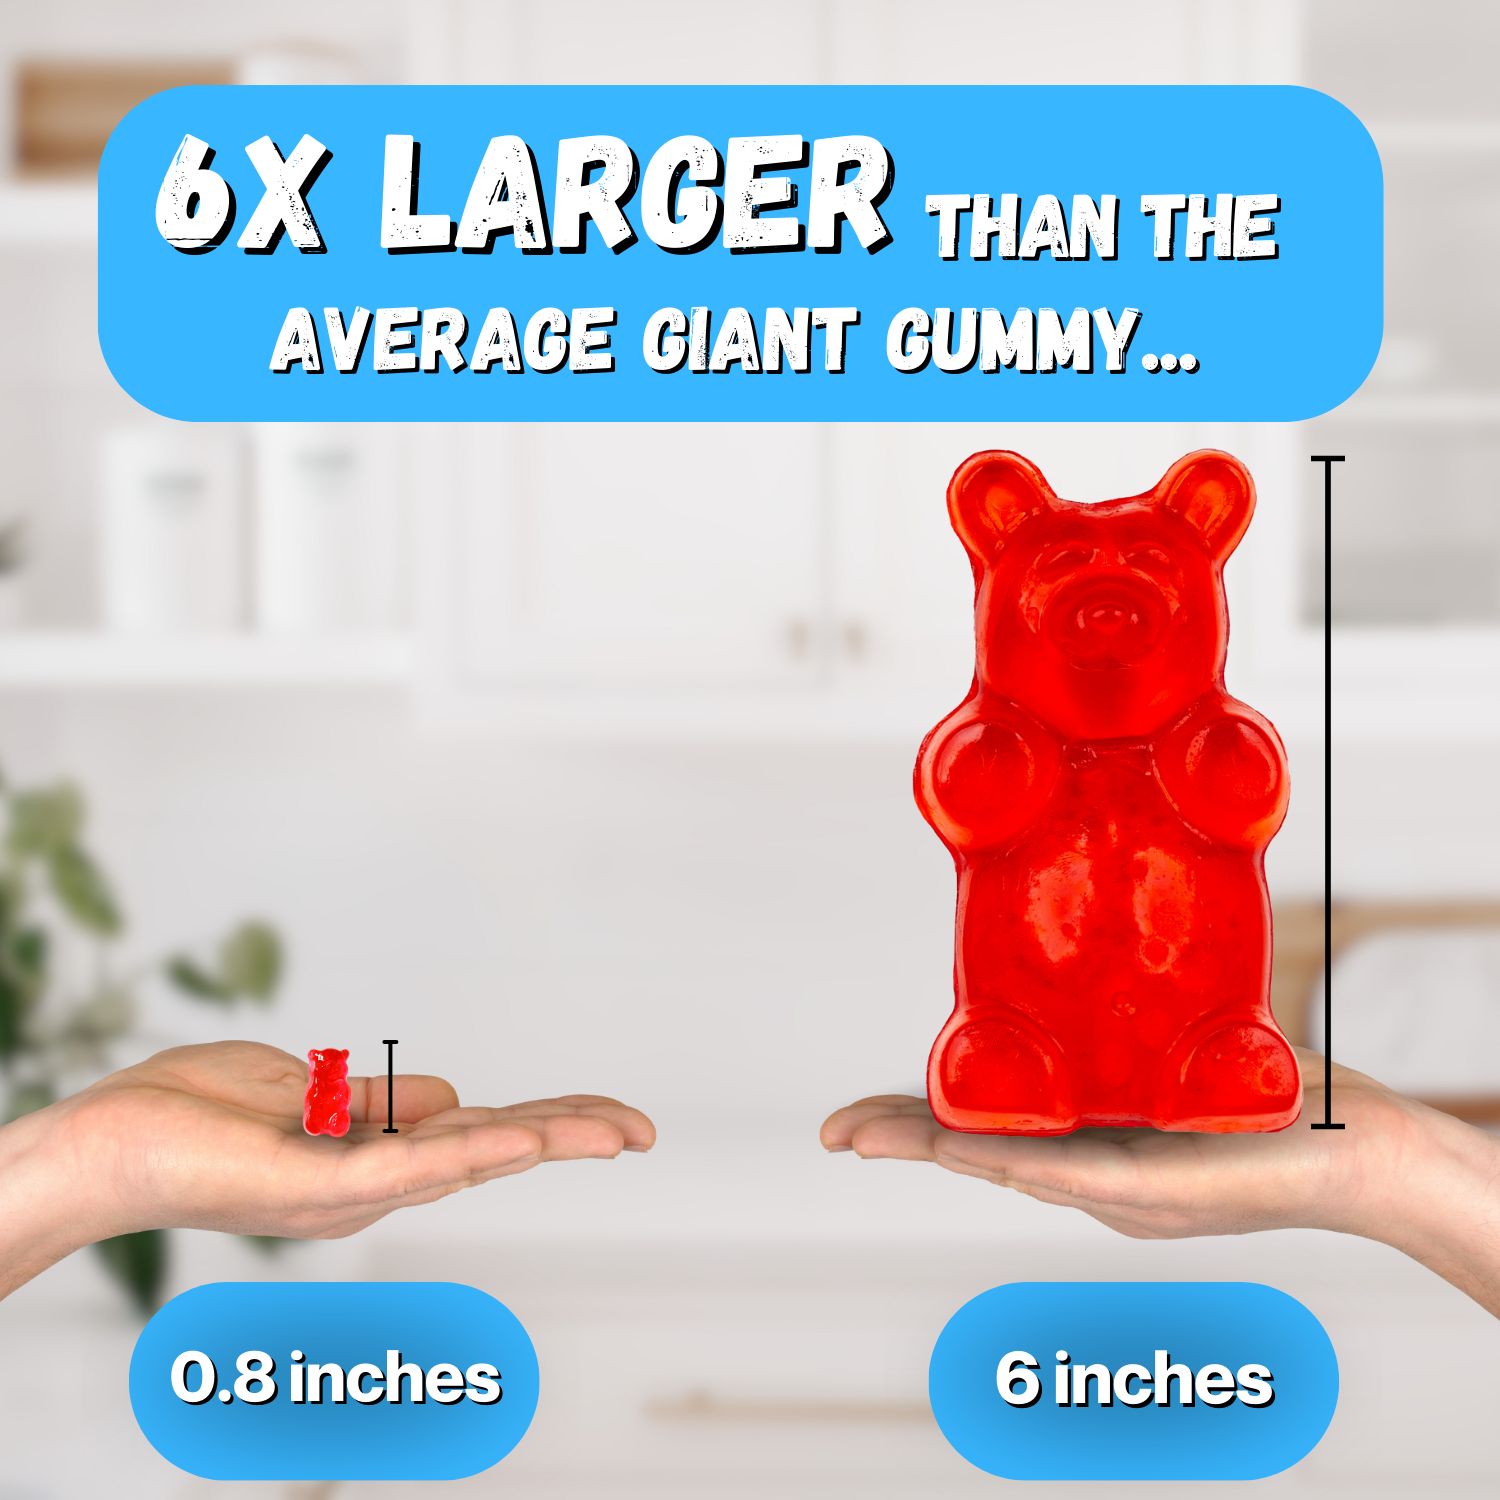 Giant Gummy Watermelon - 5oz